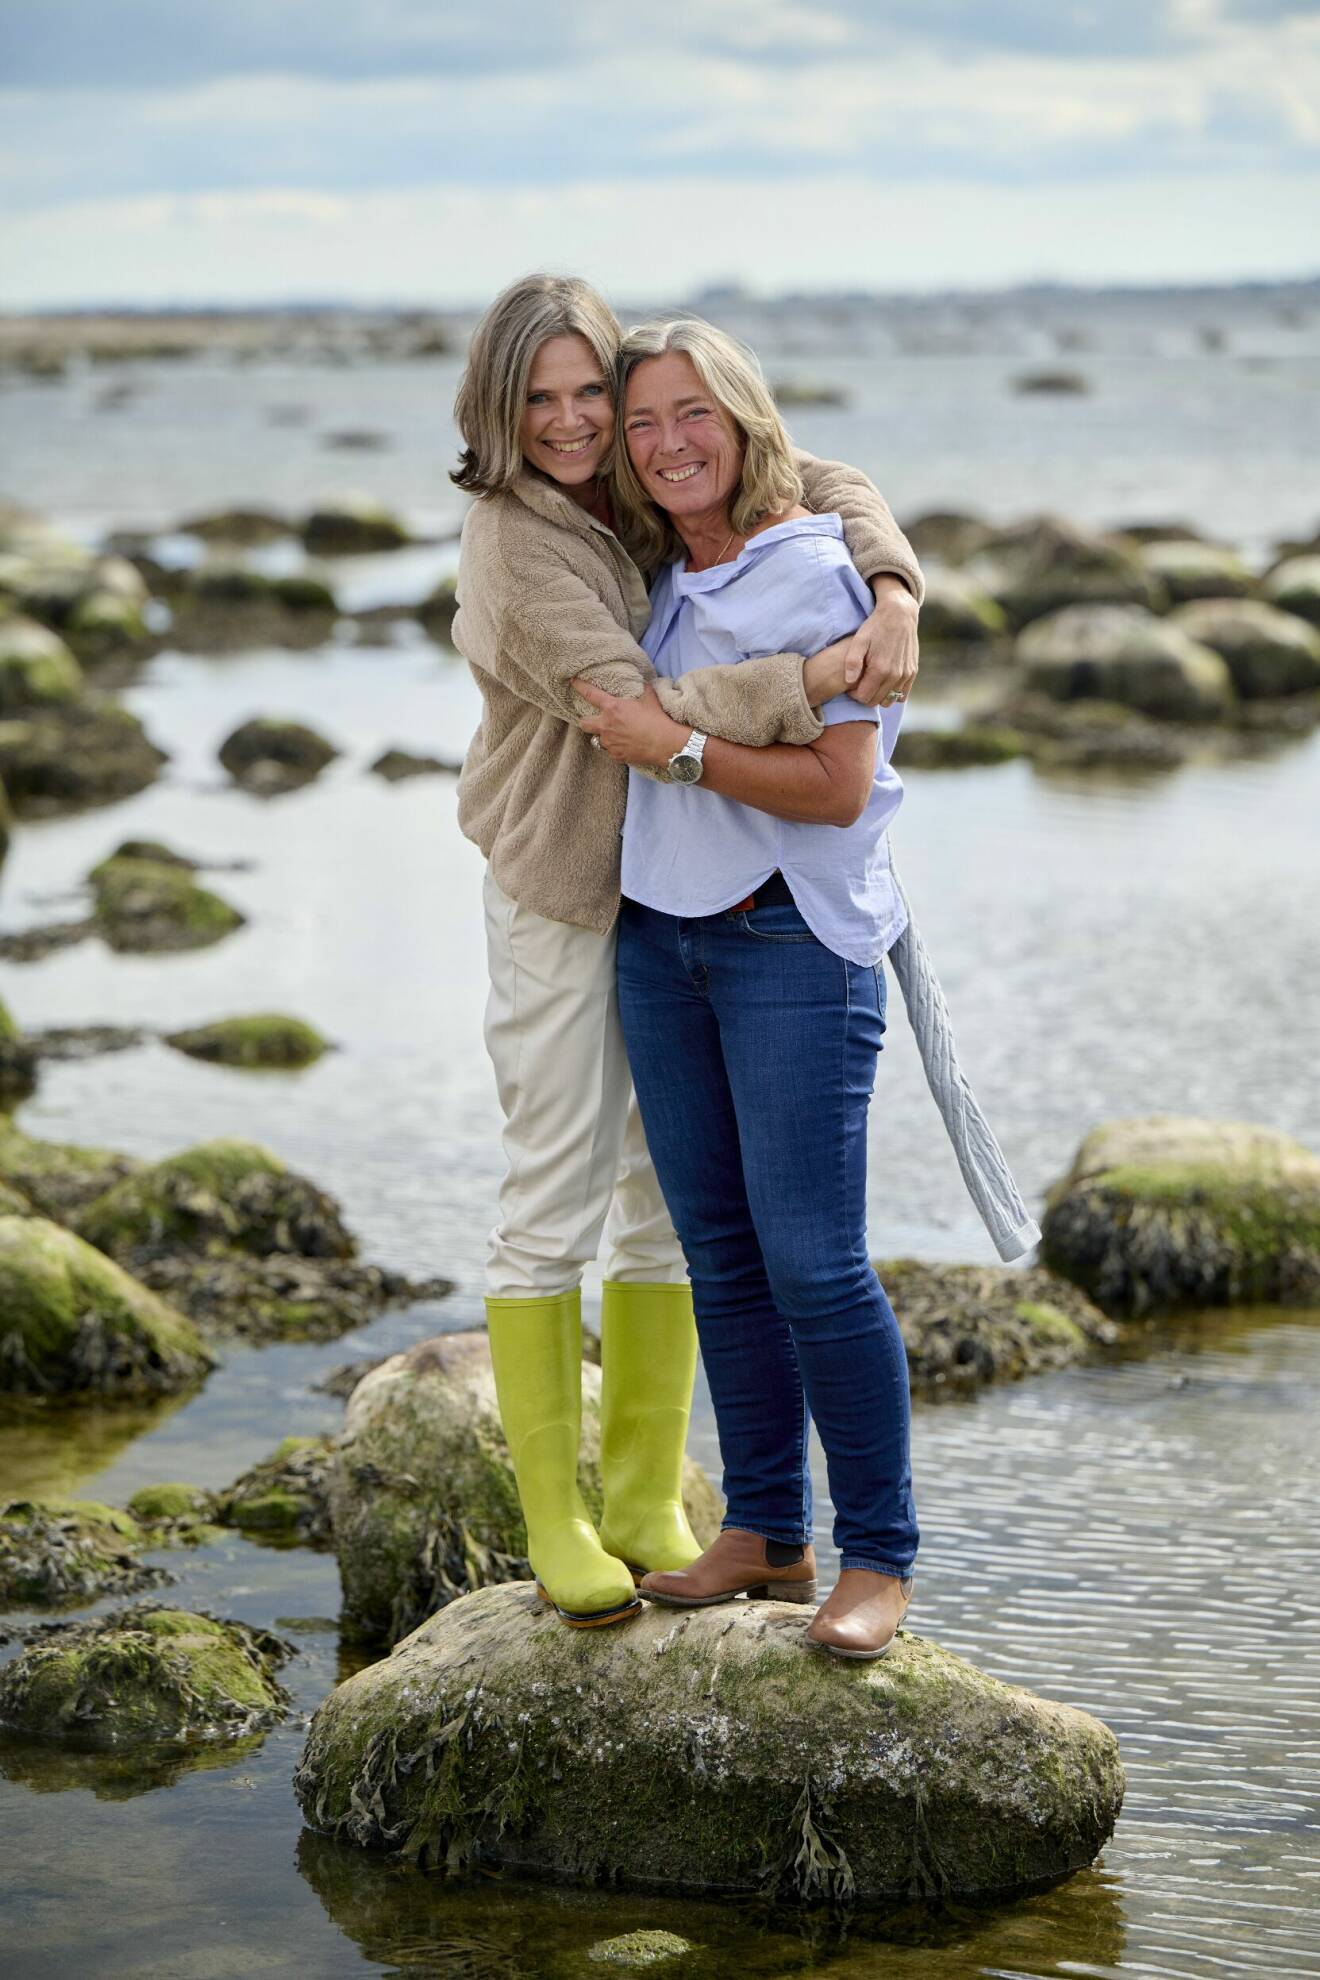 Birgitta Hågemark Olshov håller om Annika Erlandsson Olshov där de leende står tillsammans på en stor sten i vattnet nära strandkanten i Viken vid Öresund.